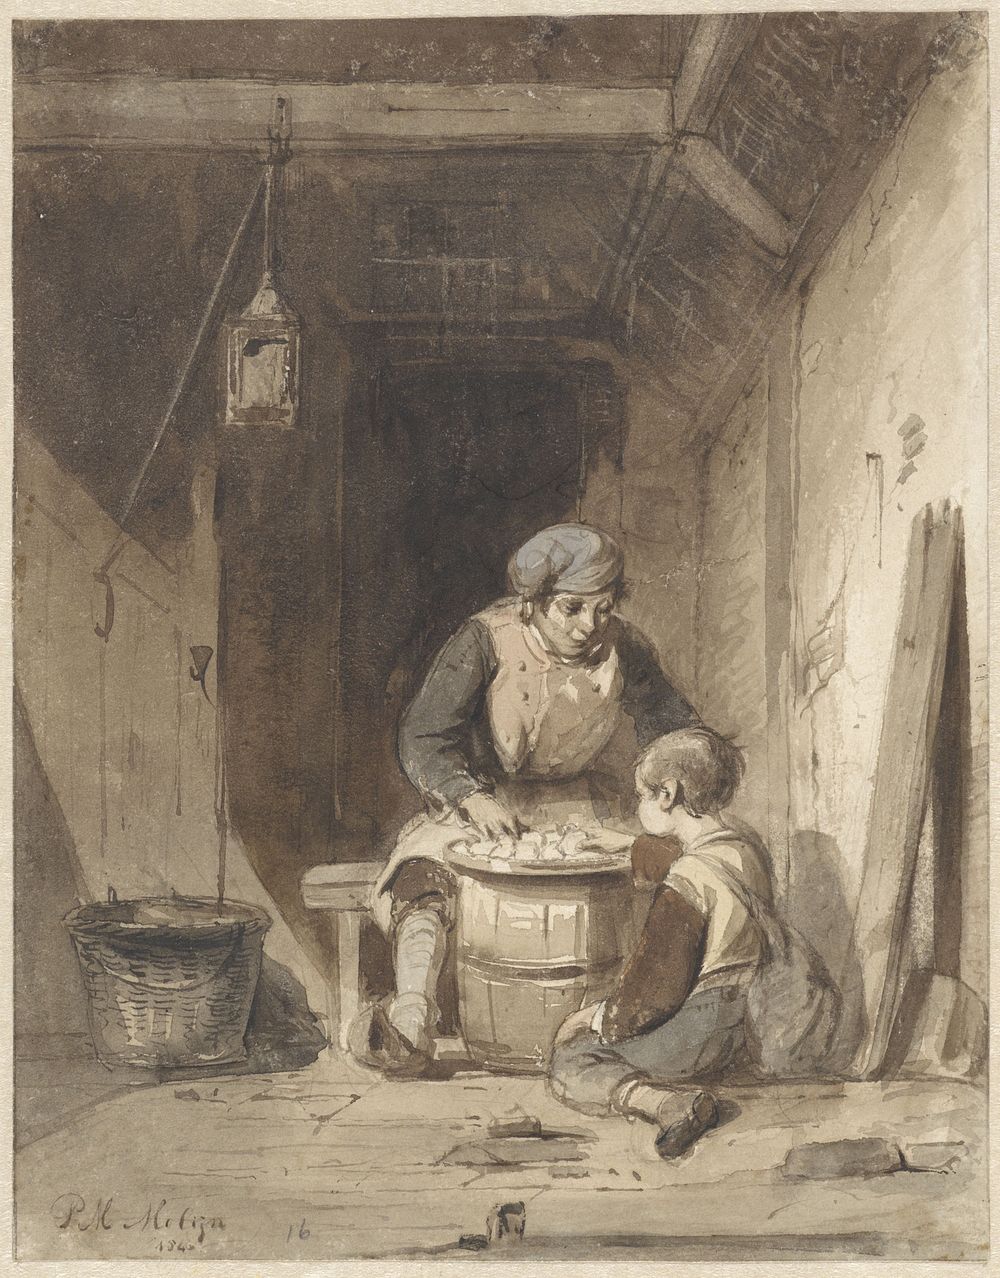 Man en jongetje etend in een schuur (1846) by Petrus Marius Molijn